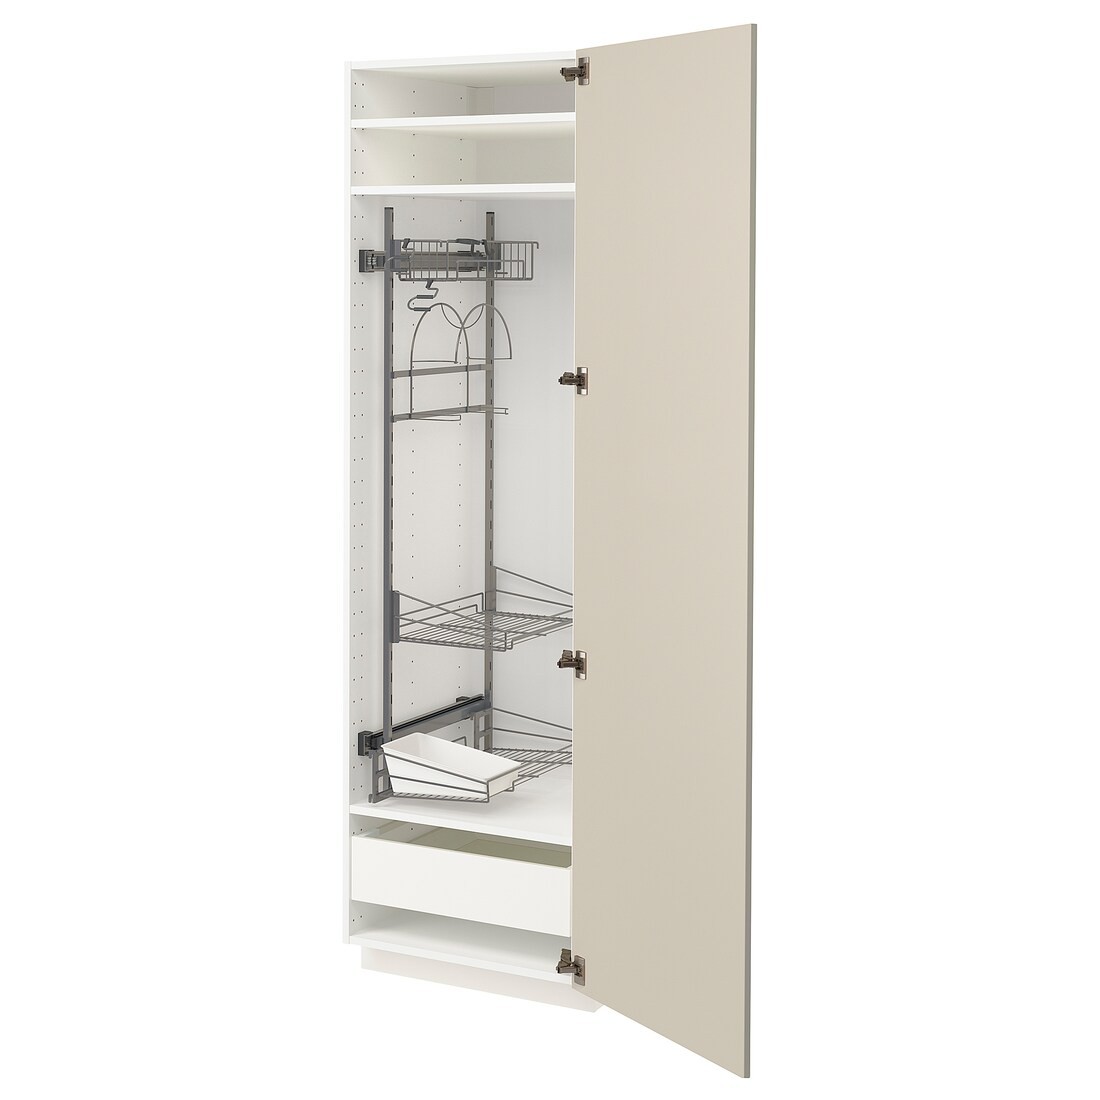 METOD МЕТОД / MAXIMERA МАКСИМЕРА Высокий шкаф с отделением для аксессуаров для уборки, белый / Havstorp бежевый, 60x60x200 см